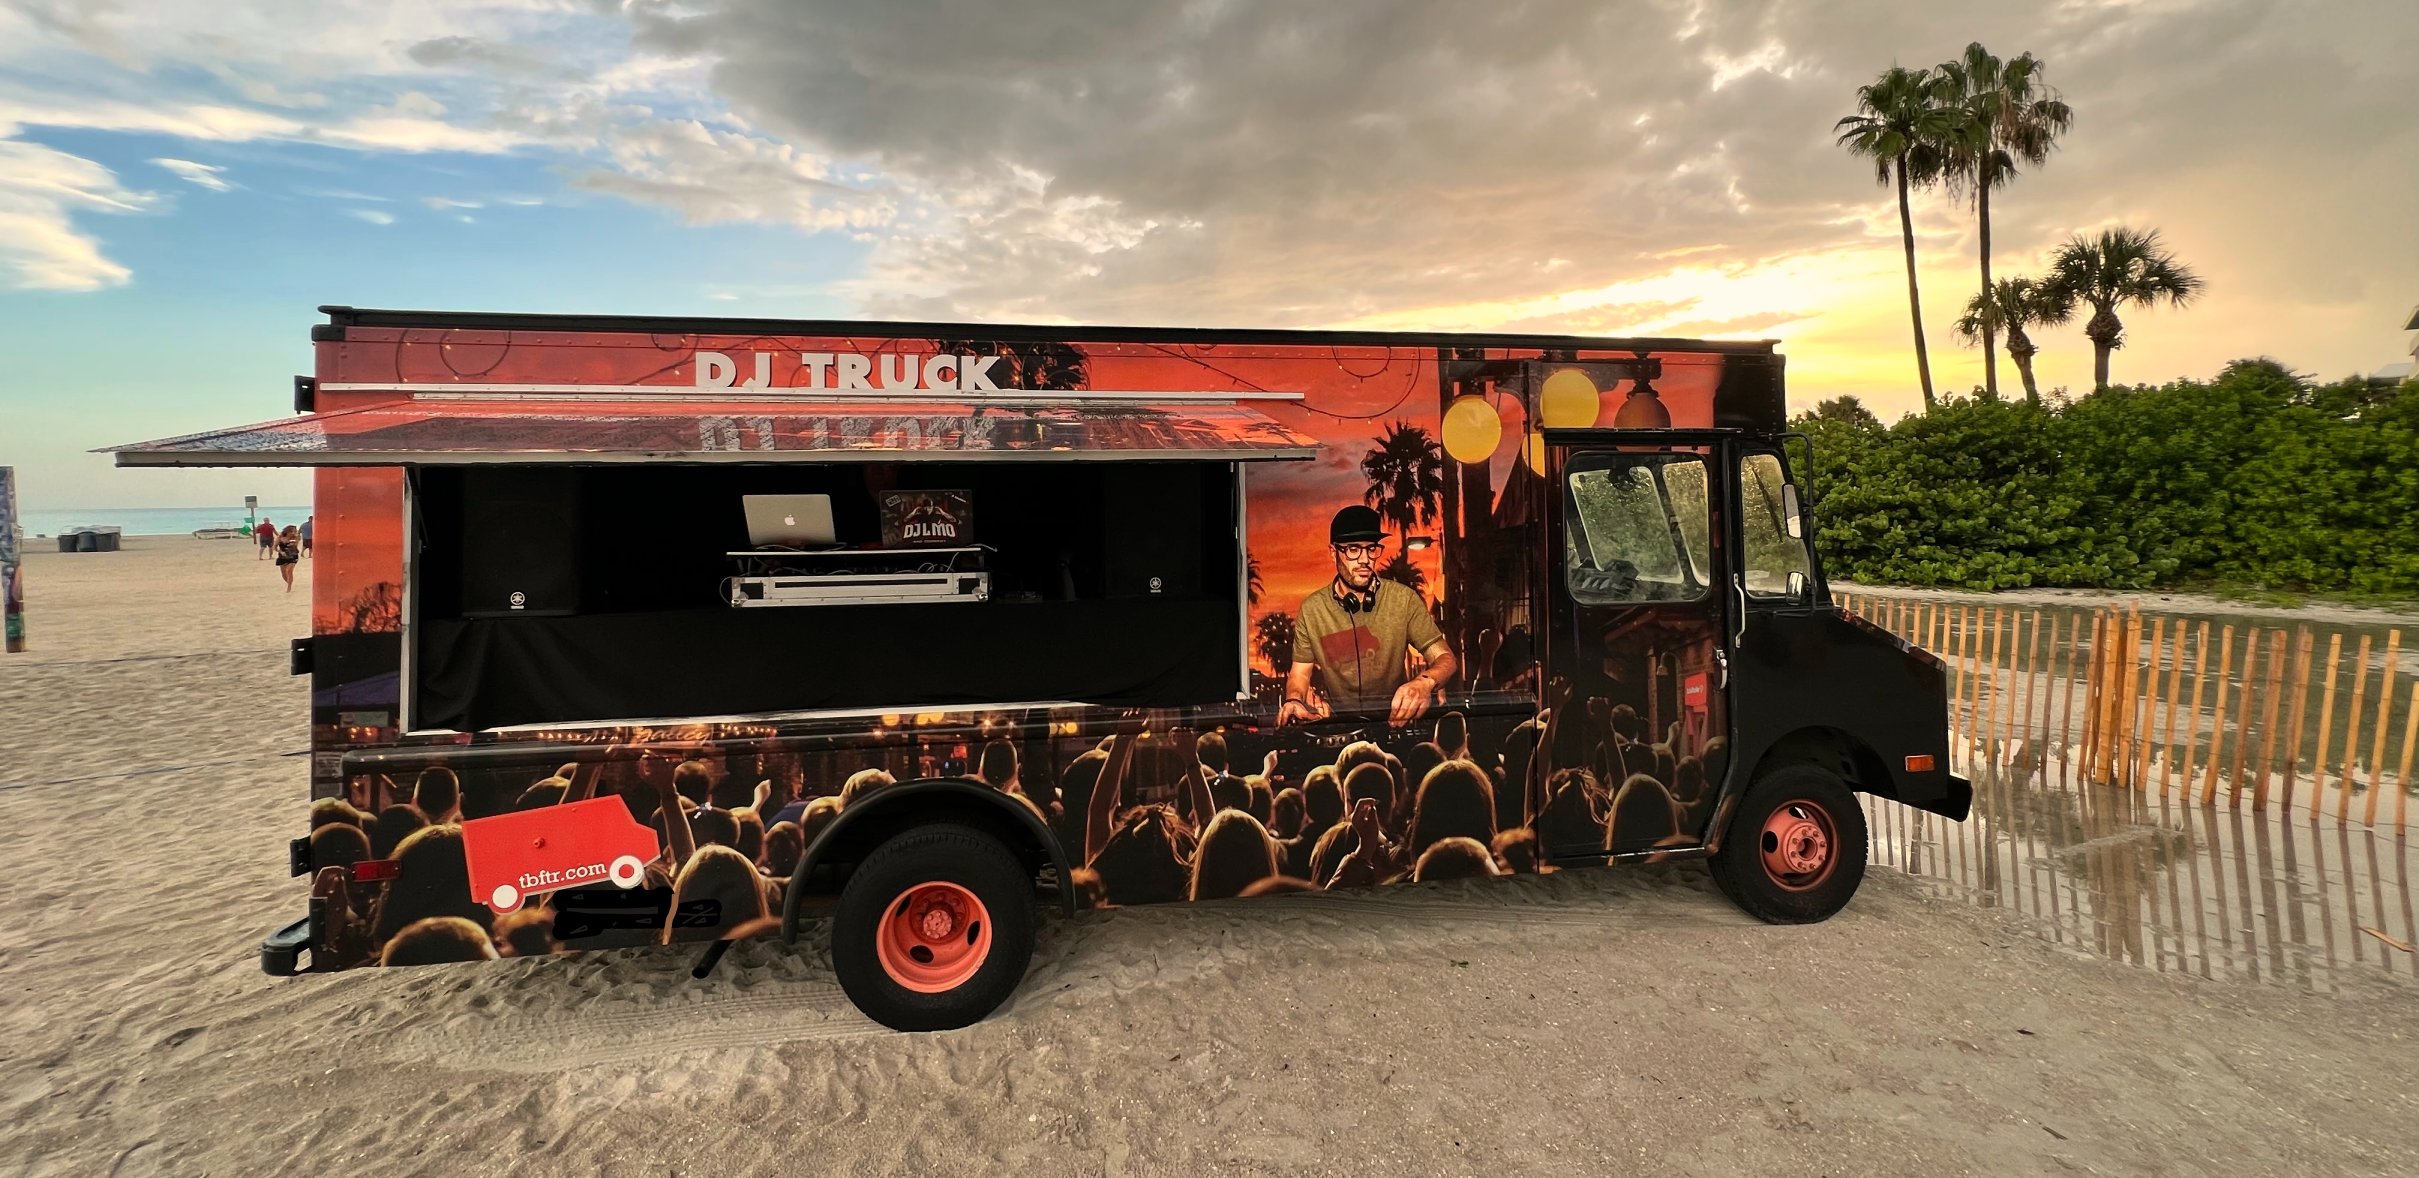 Outdoor DJ Service - Mobile DJ Truck